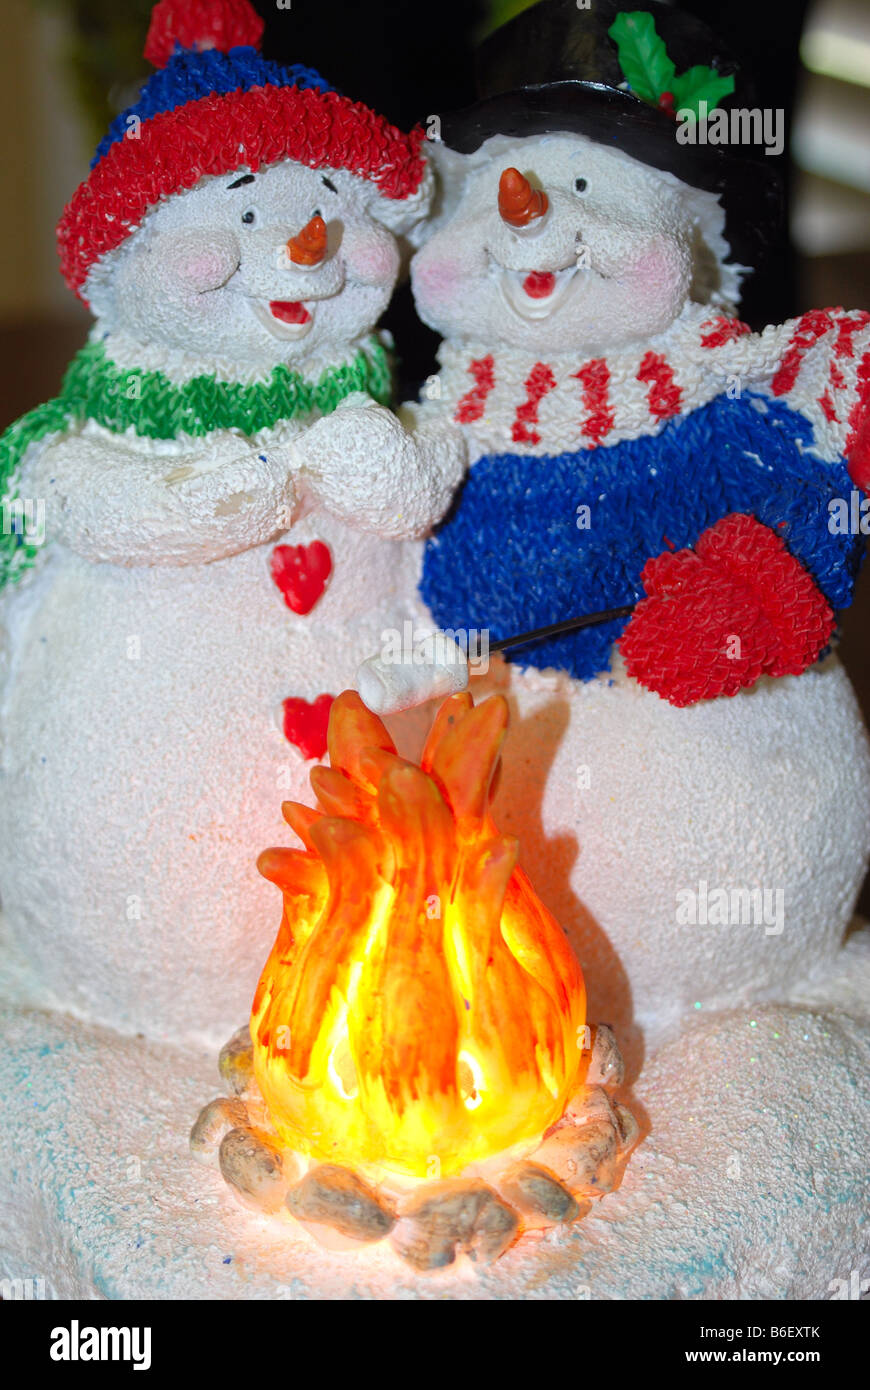 Cerca de una decoración de navidad de dos snowpeople, un muñeco de nieve y un snowwoman Foto de stock